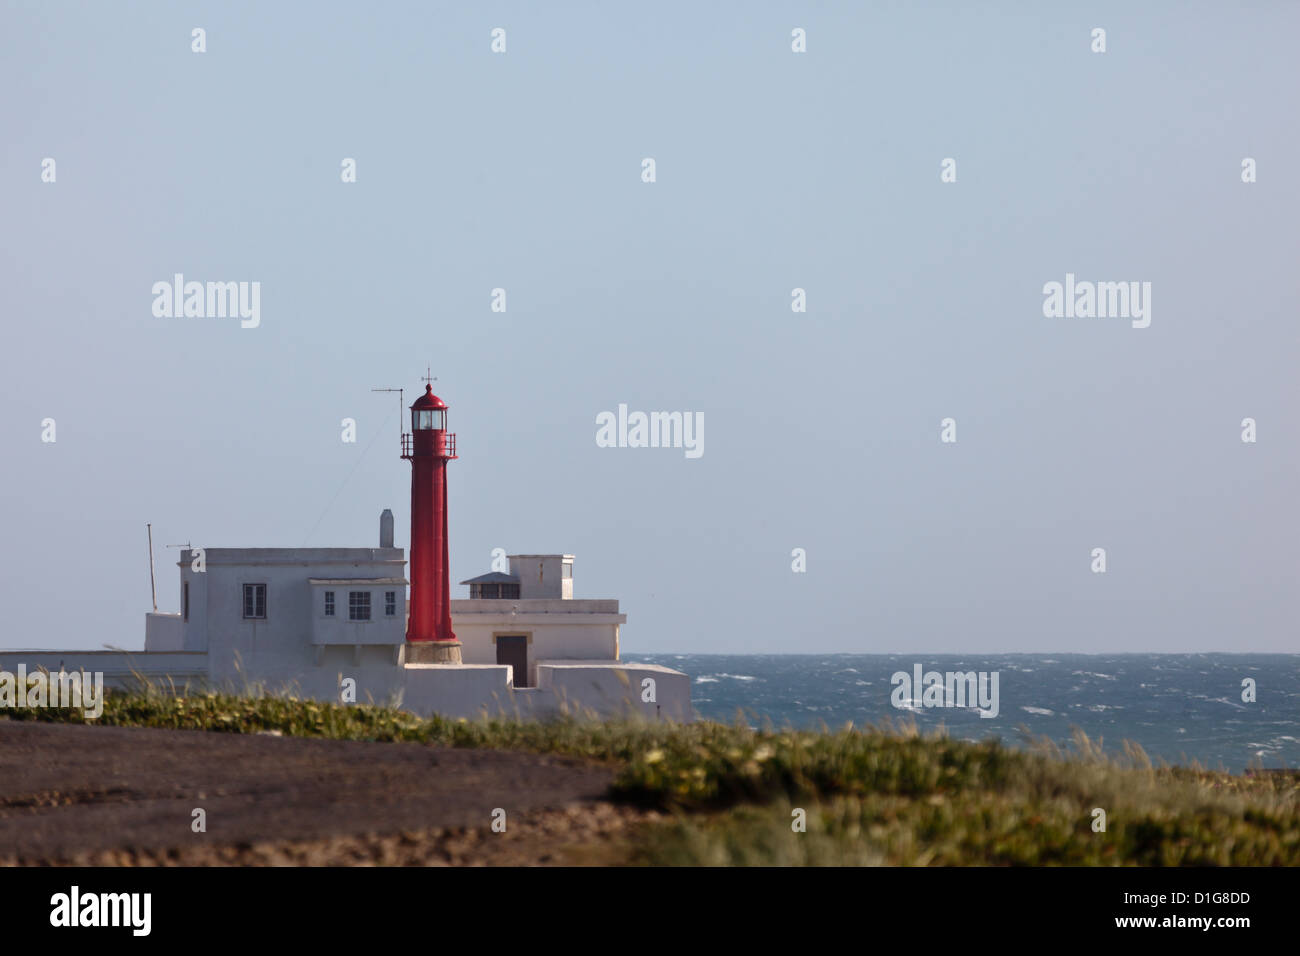 La tour rouge du phare de Cabo Raso à 8 km de Cascais, Portugal Banque D'Images